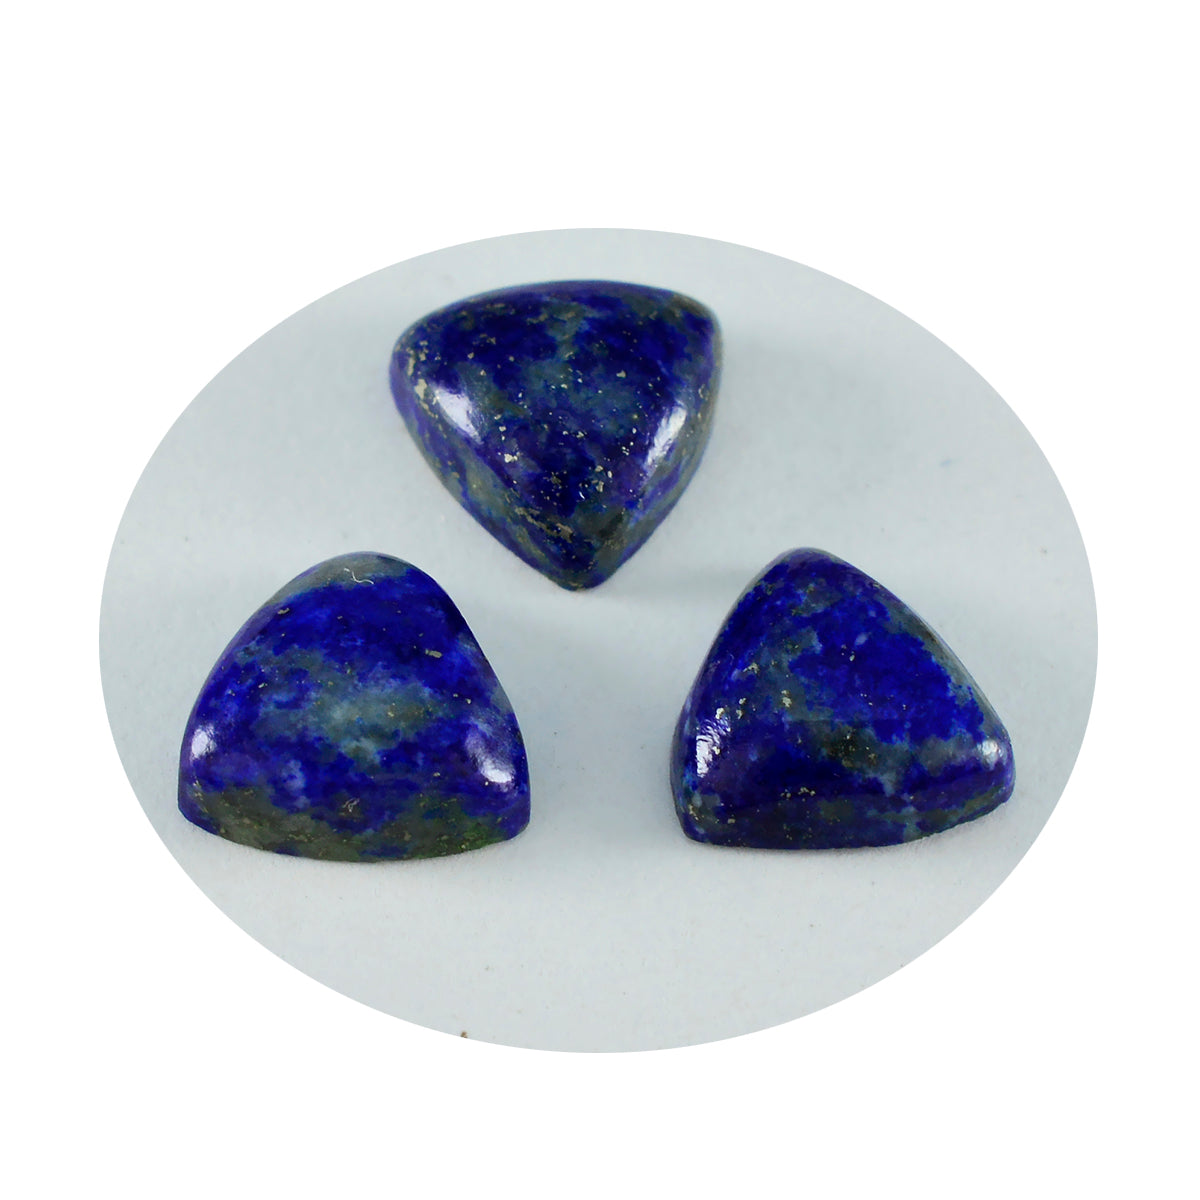 Riyogems 1 pièce cabochon lapis-lazuli bleu 9x9mm forme trillion belle pierre précieuse de qualité